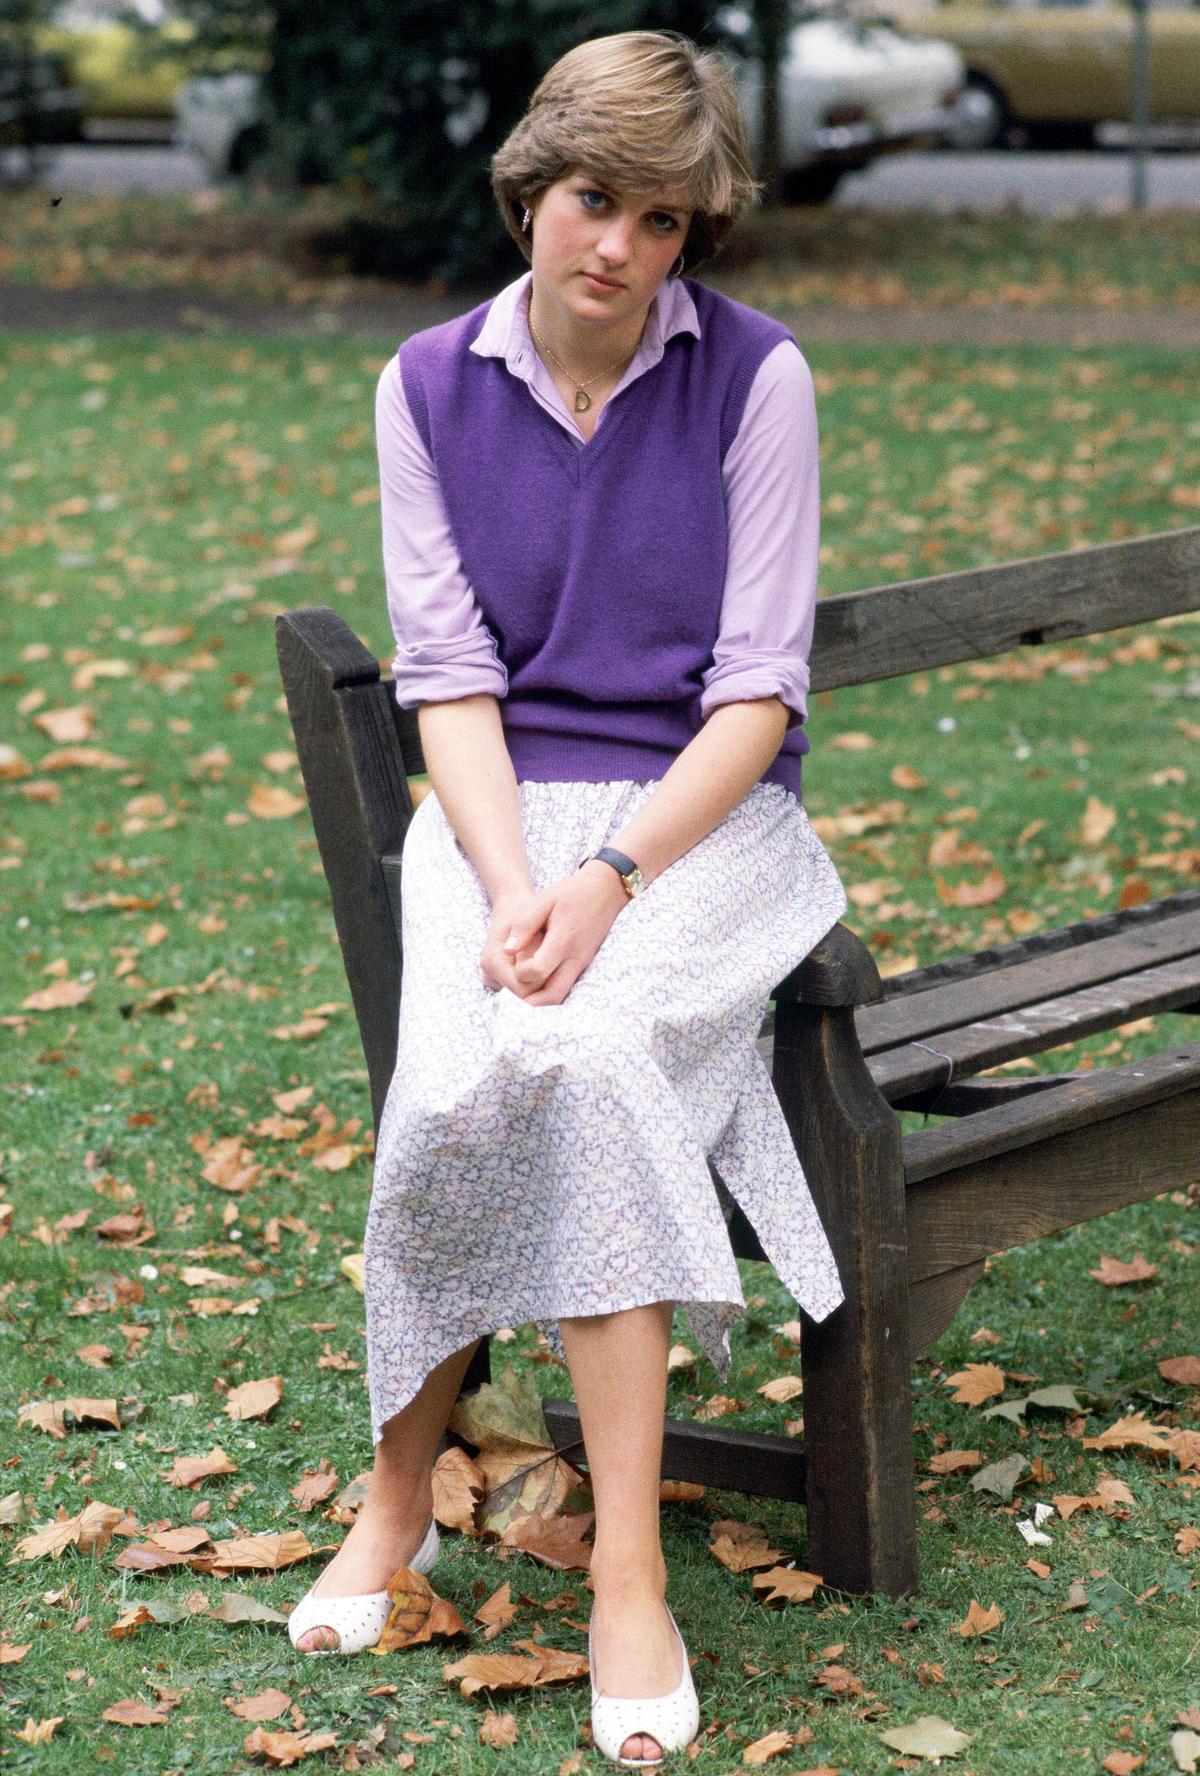 Diana - Eine Ära in Bildern (1/3); Im Bild: Lady Diana Spencer im Alter von 19 Jahren im Young England Kindergarten in Pimlico, London, sitzt auf der Lehne einer Bank.